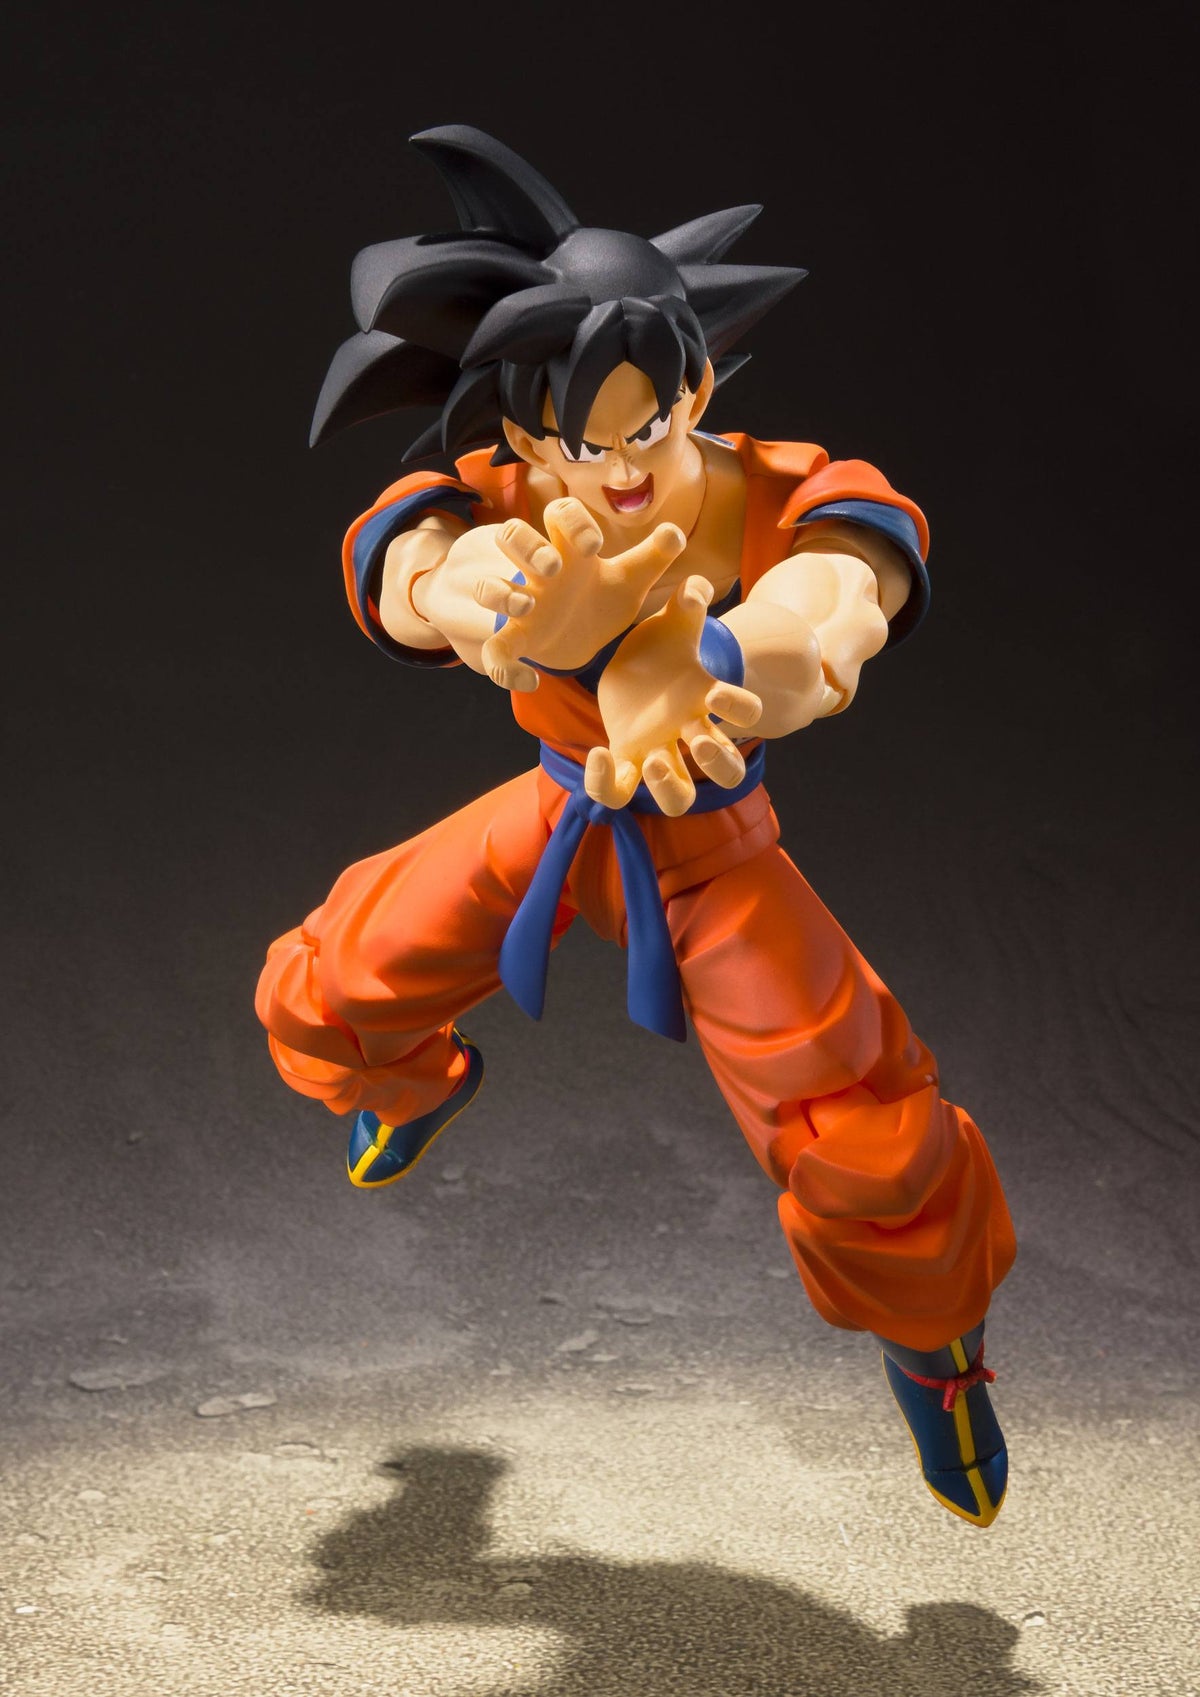 Dragon Ball Z - Son Goku - A Saiyan Raised On Earth Ver. S.H. Figuarts Action-Figur (Bandai)